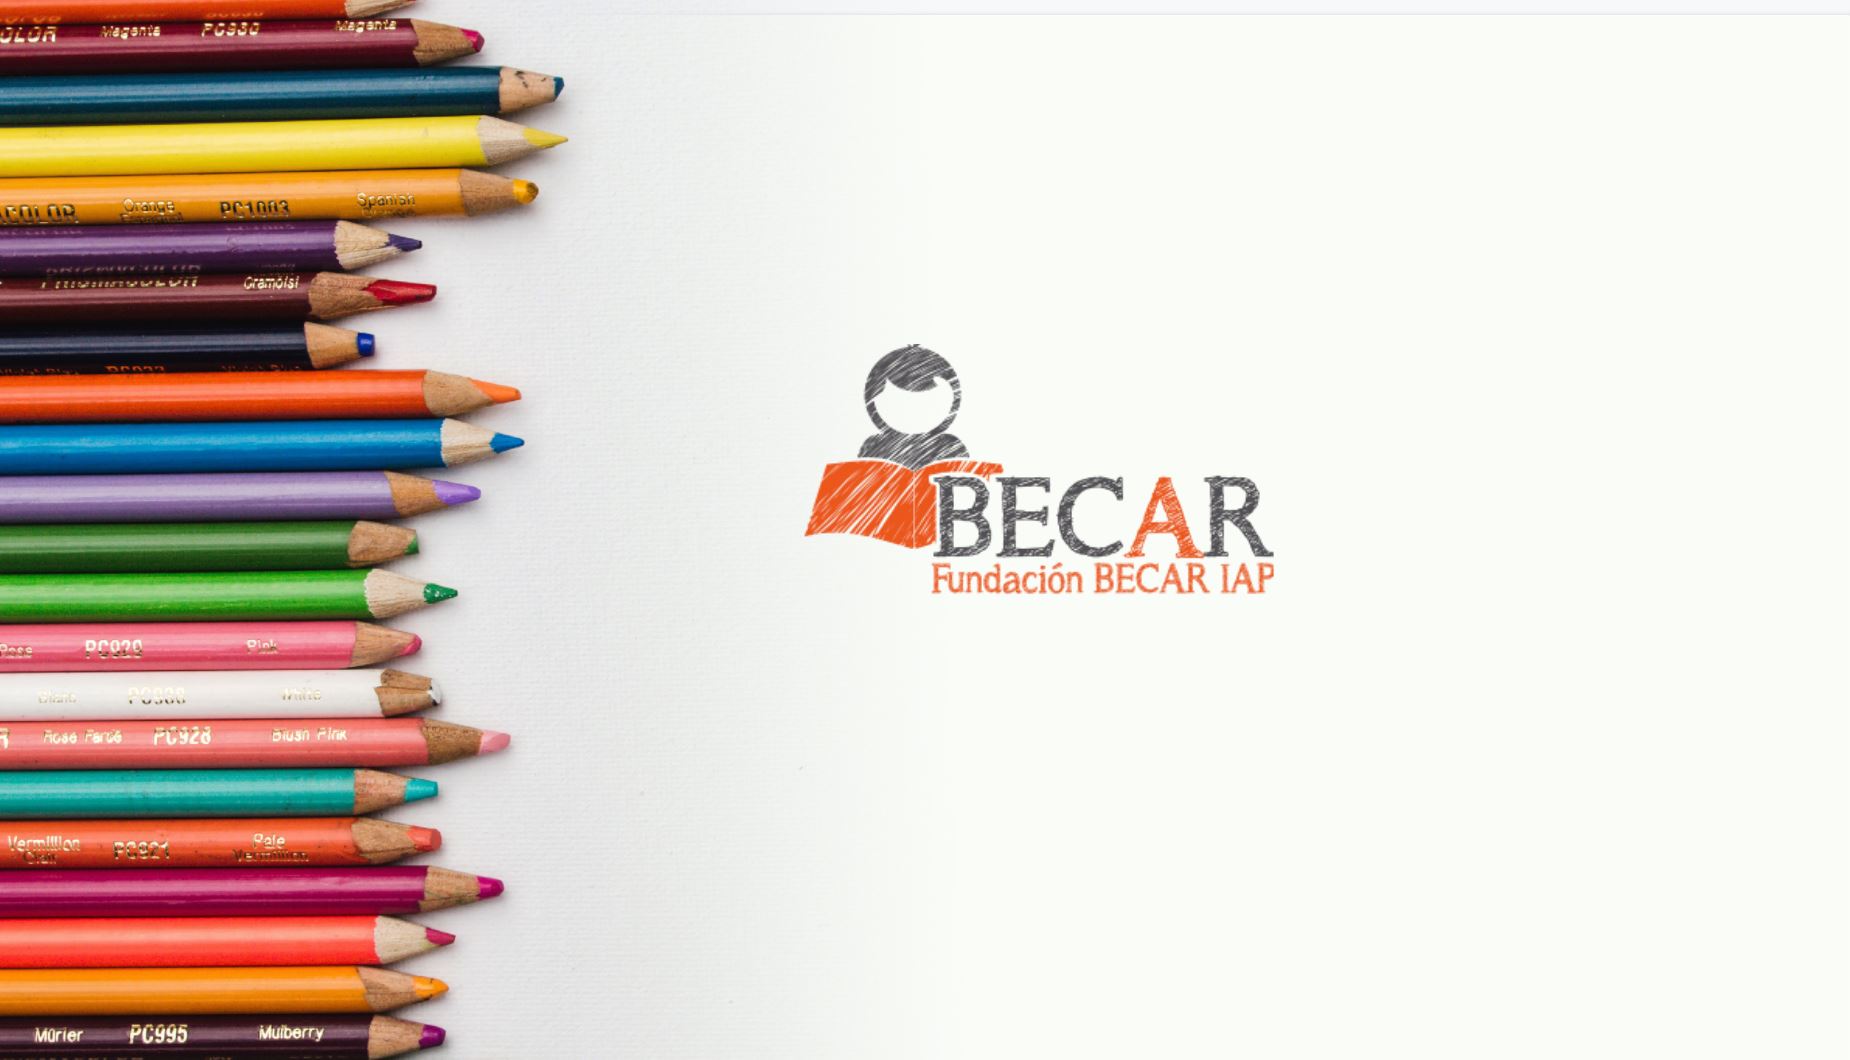 Fundación Becar transforma la vida de niños y jóvenes mexicanos